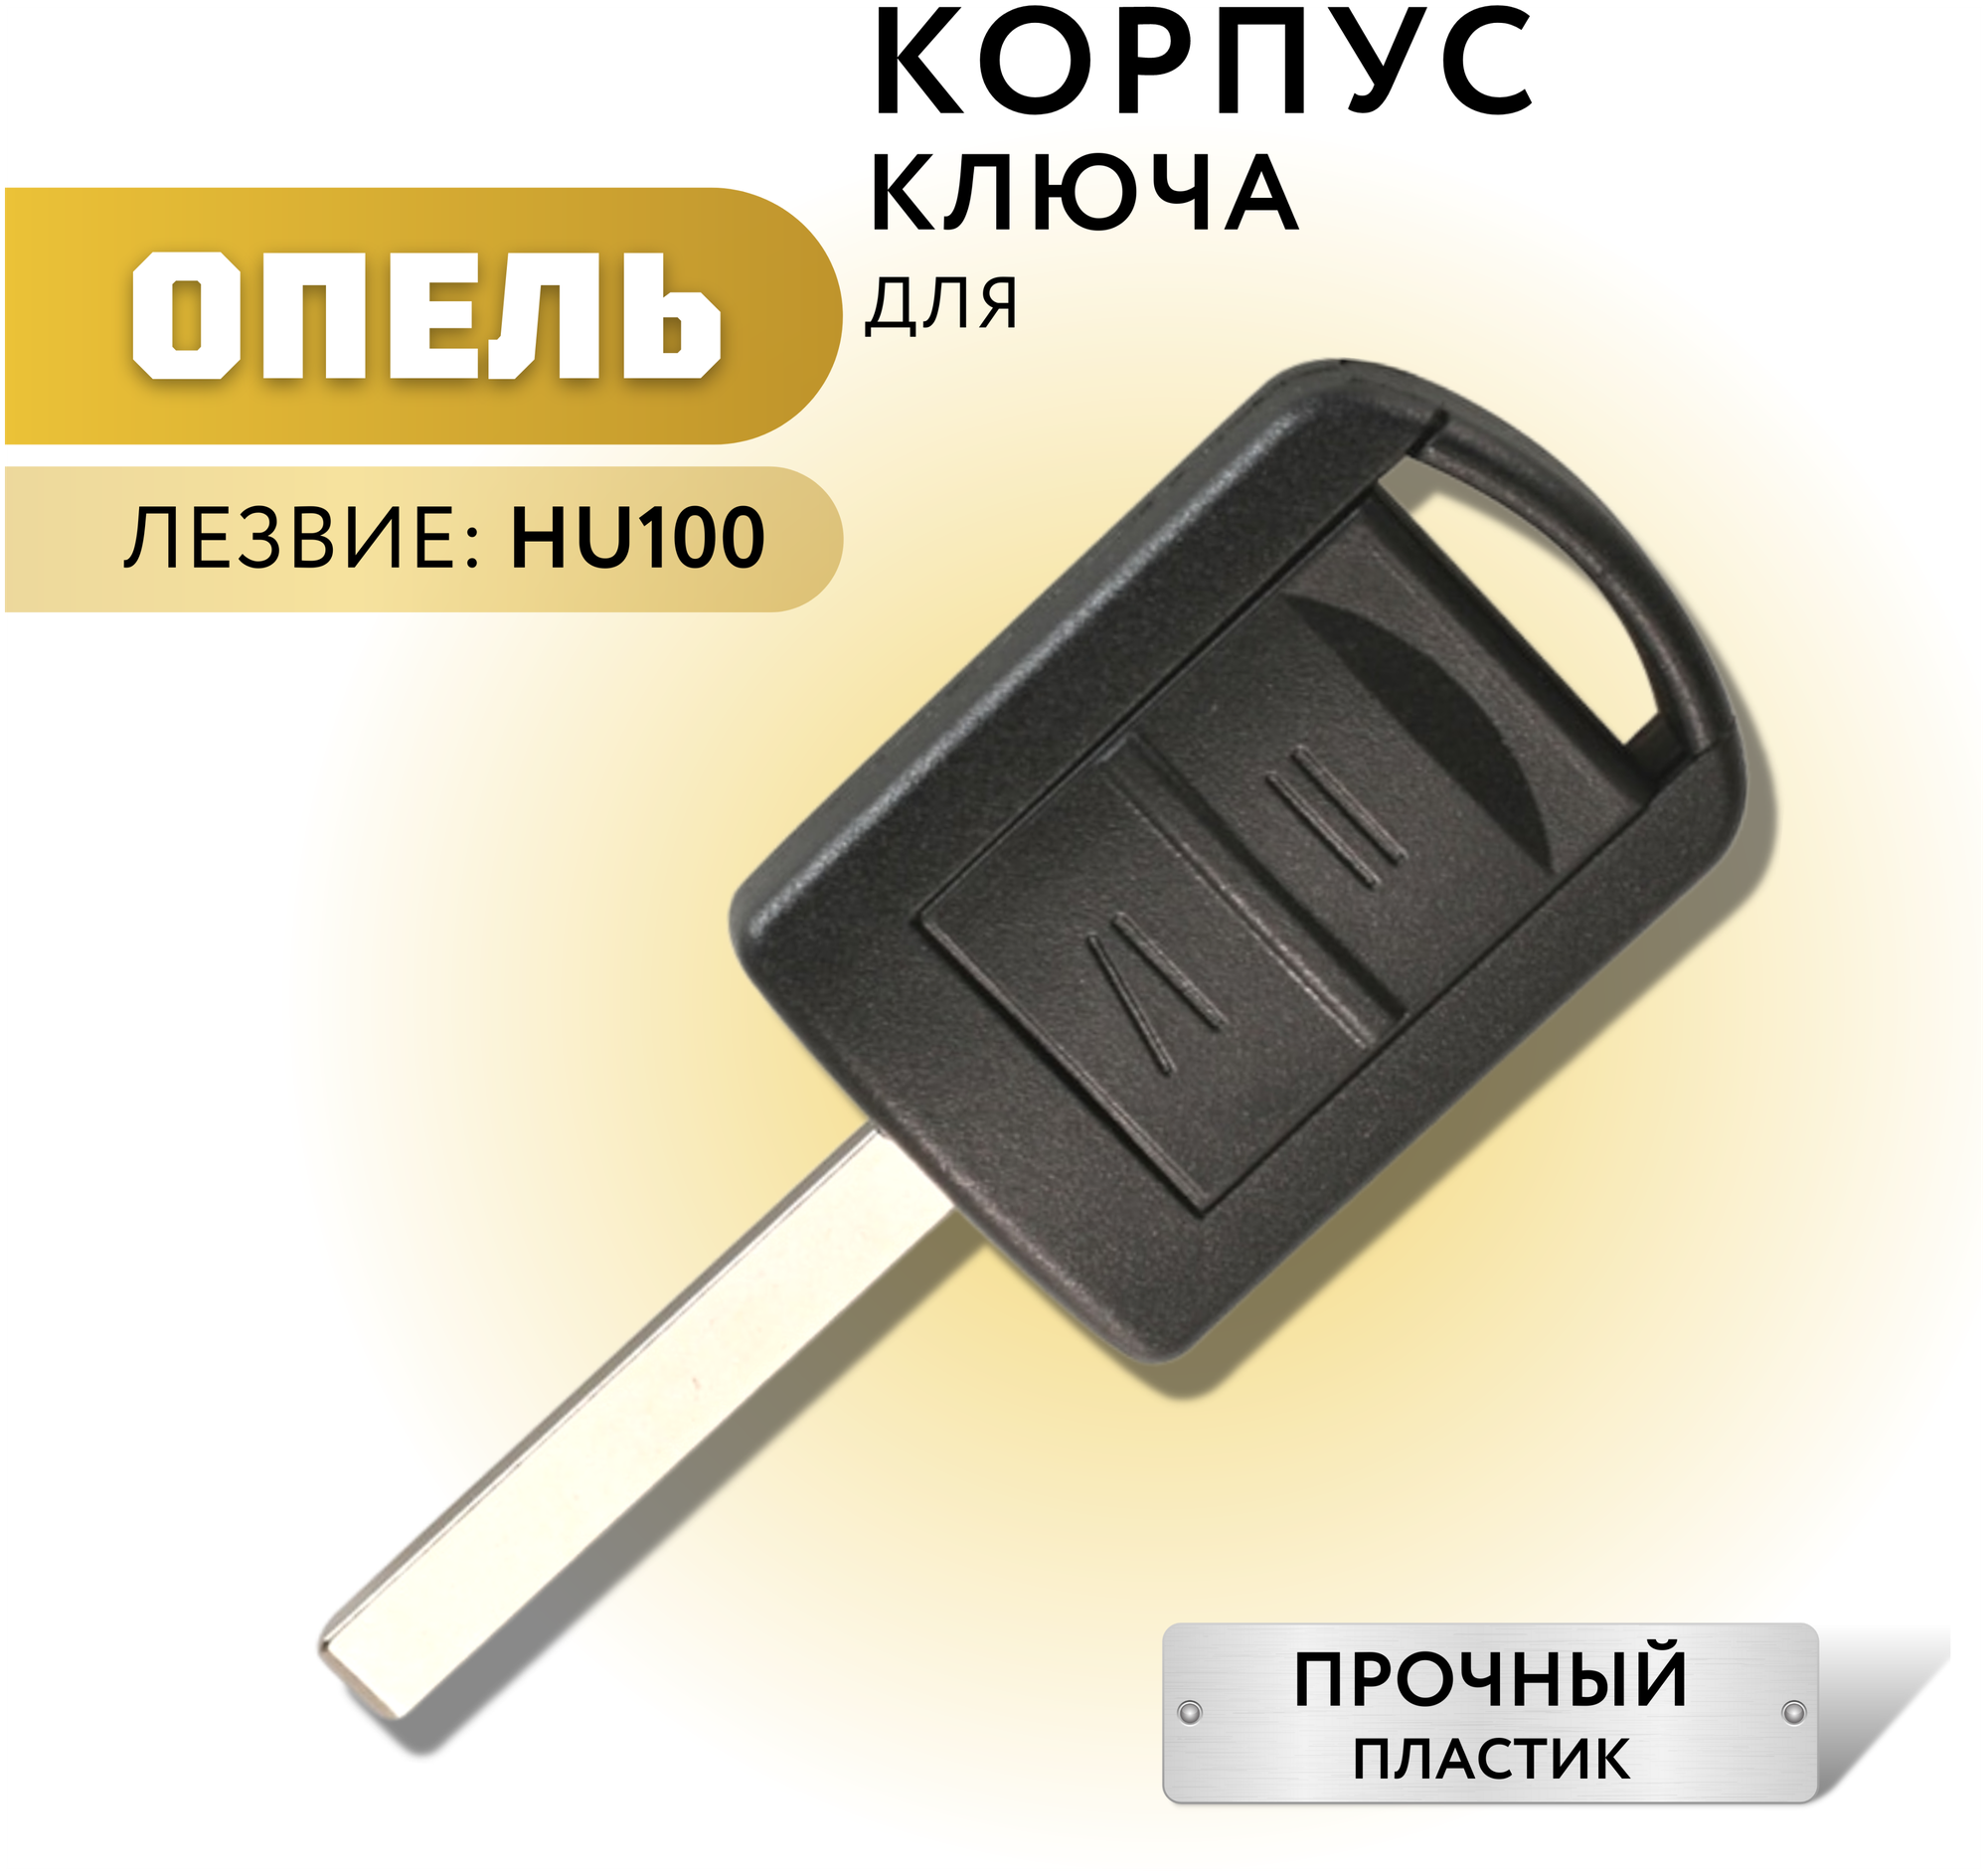 Корпус ключа зажигания для Опель корпус ключа для Opel 2 кнопки